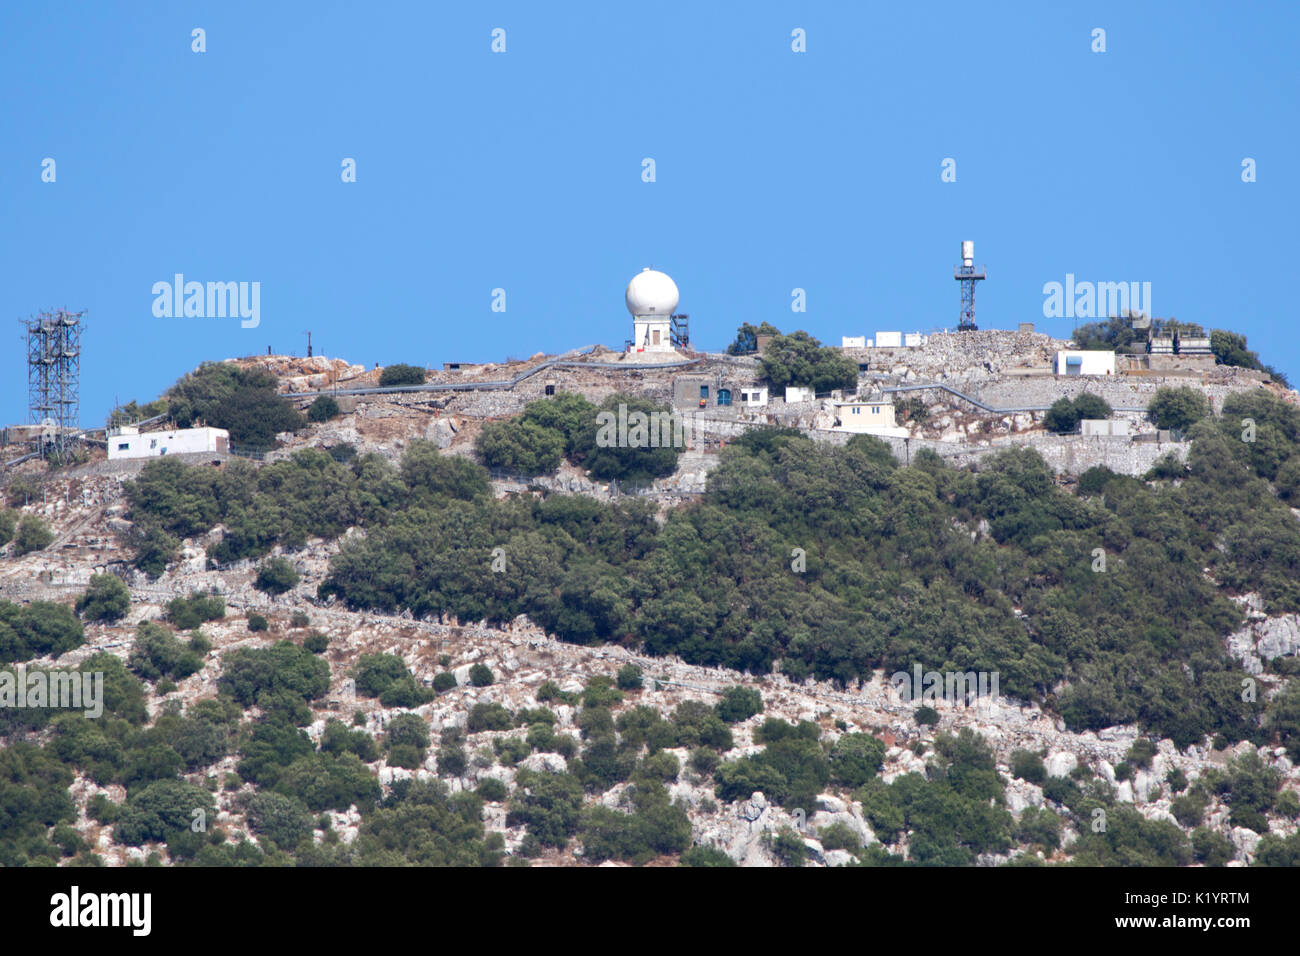 La Rocca di Gibilterra monolitico promontorio calcareo situato in British Overseas territorio di Gibilterra nella Penisola Iberica Foto Stock